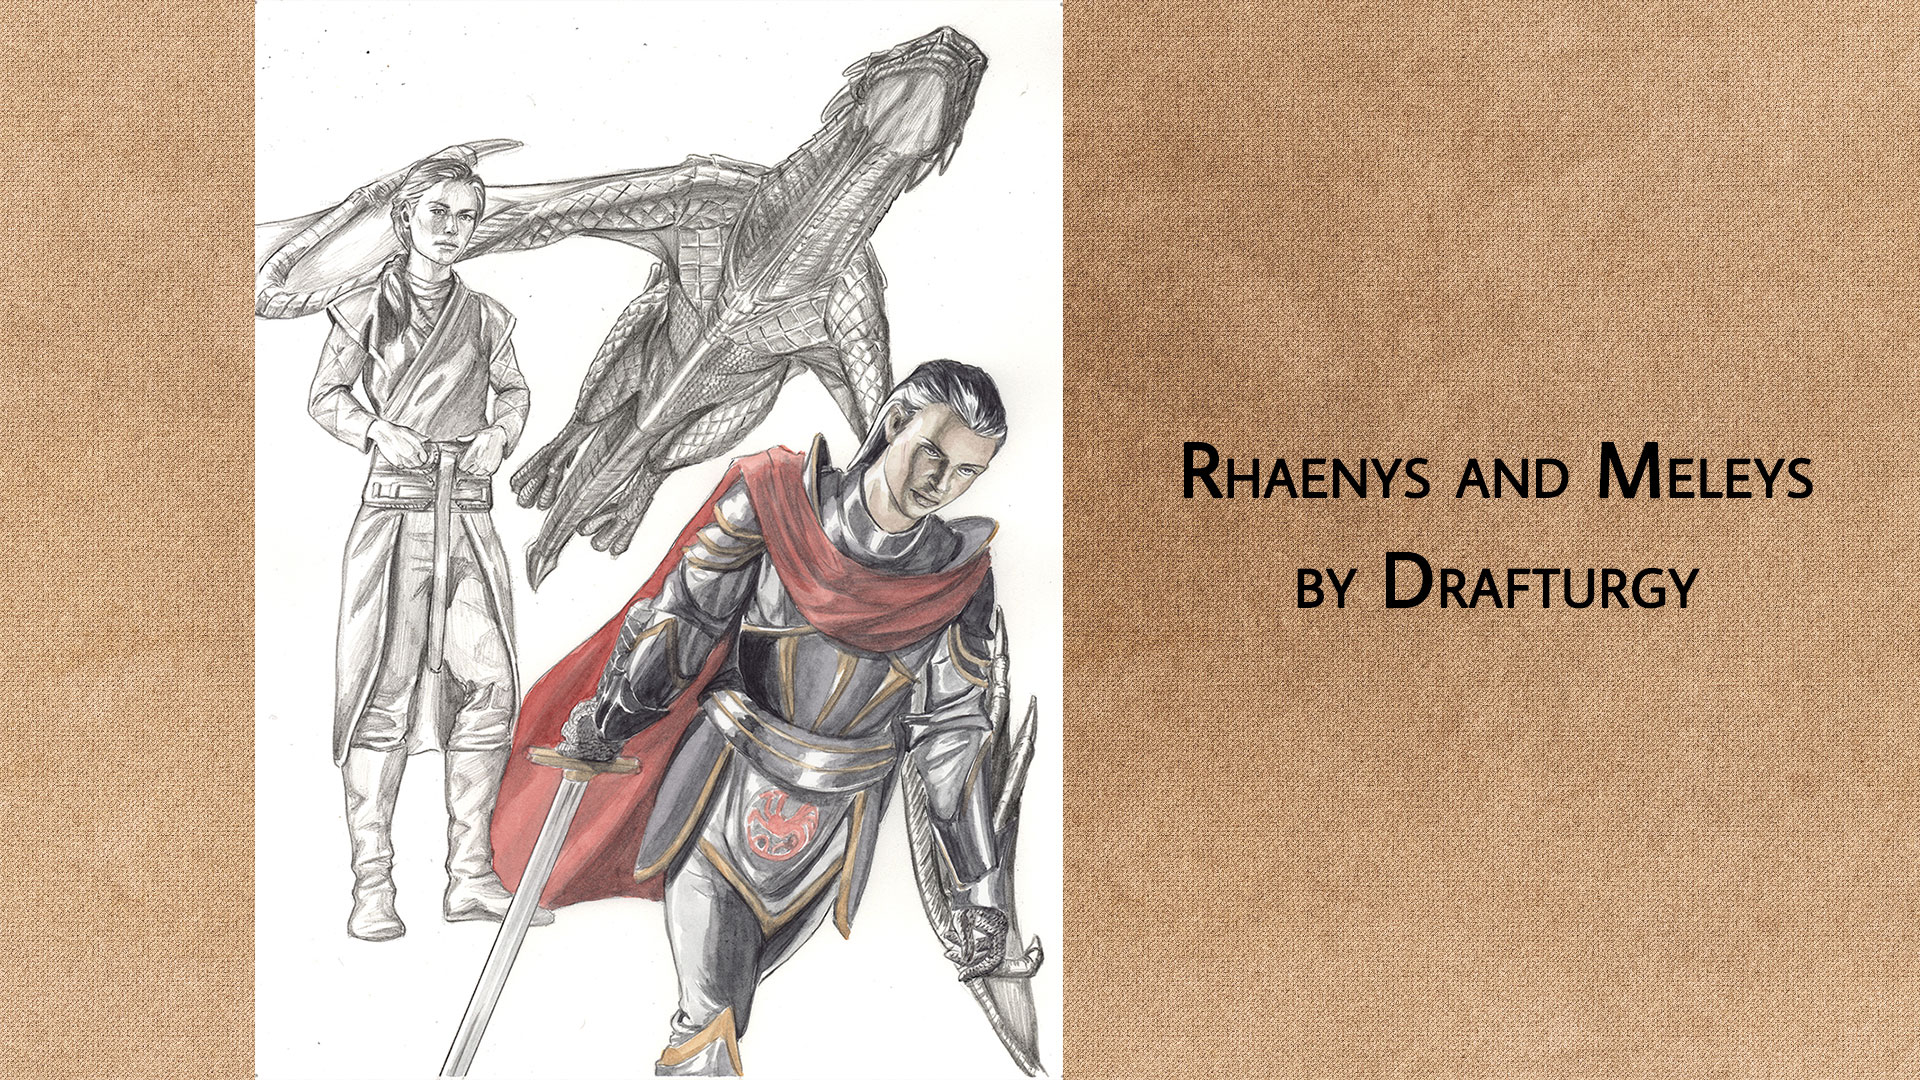 Rhaenys and Meleys (Drafturgy)